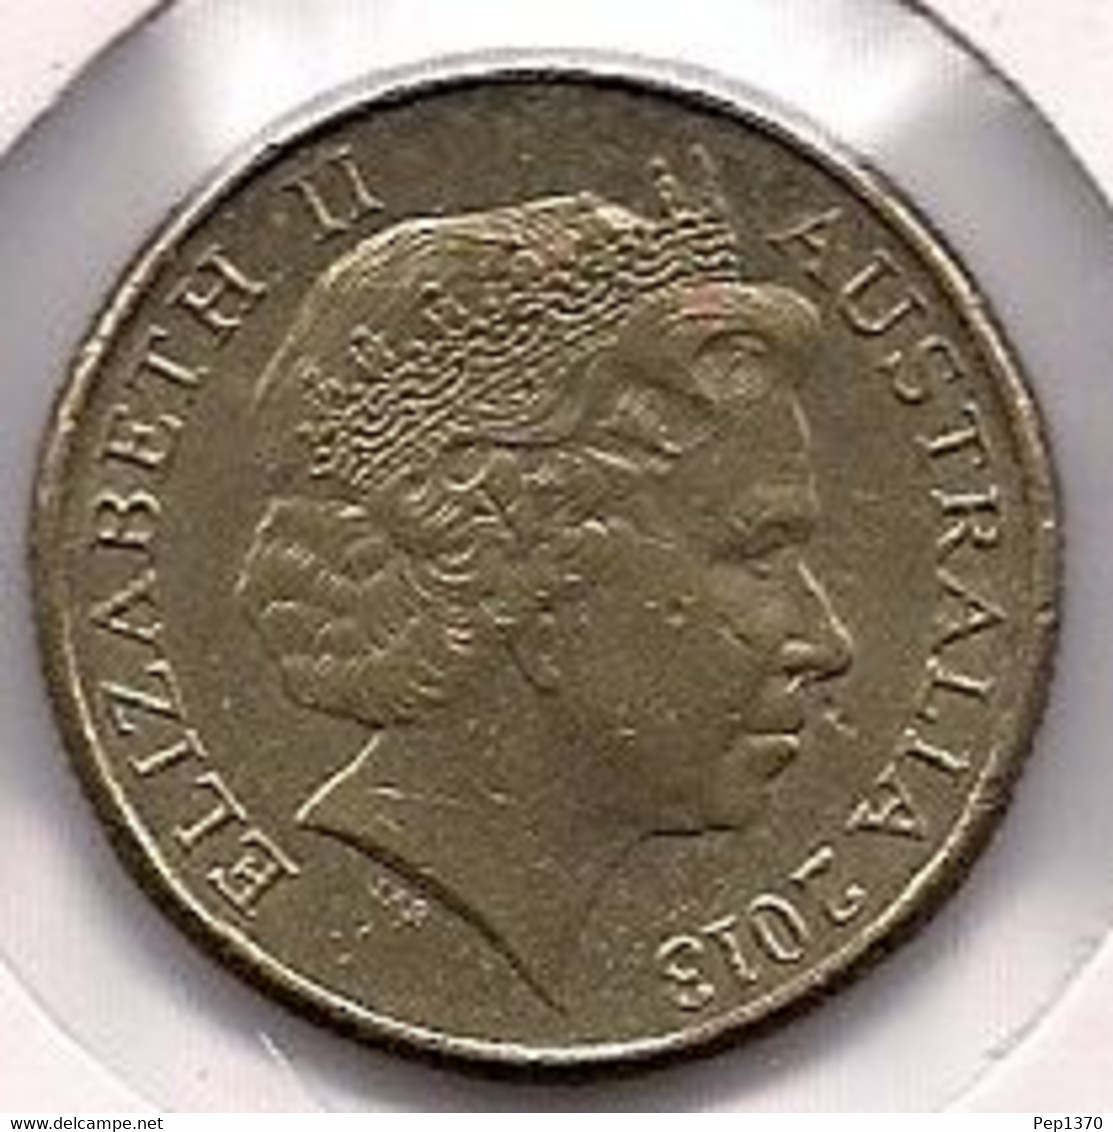 AUSTRALIA - MONEDA DE 10 CENT DE 2013 - 5 Cents